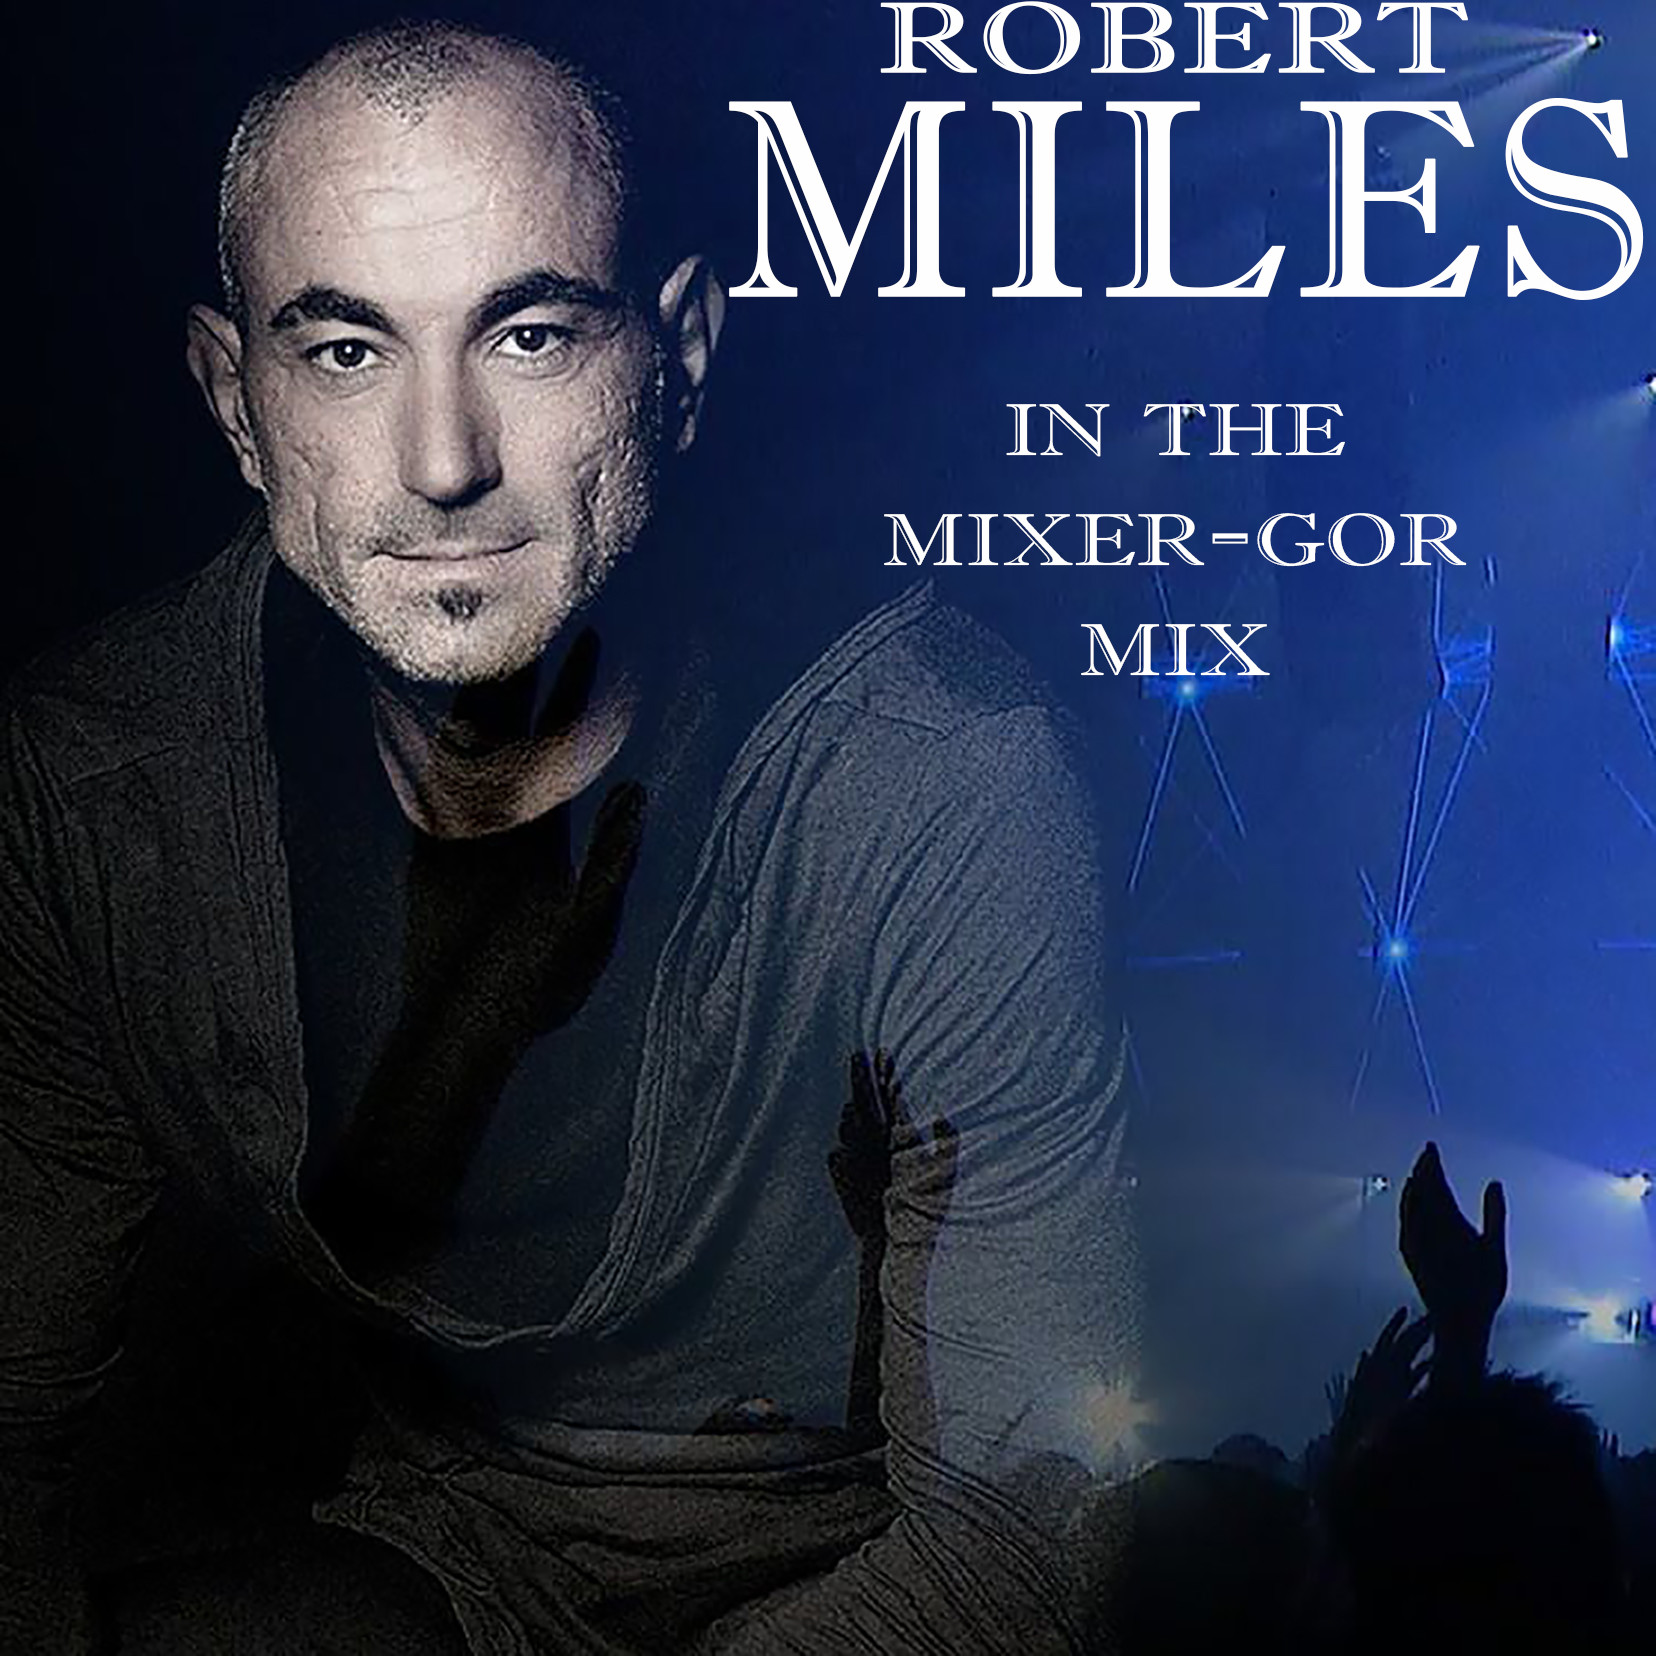 Robert miles mp3. Robert Miles. Robert Miles 2017. Robert Miles 2011.